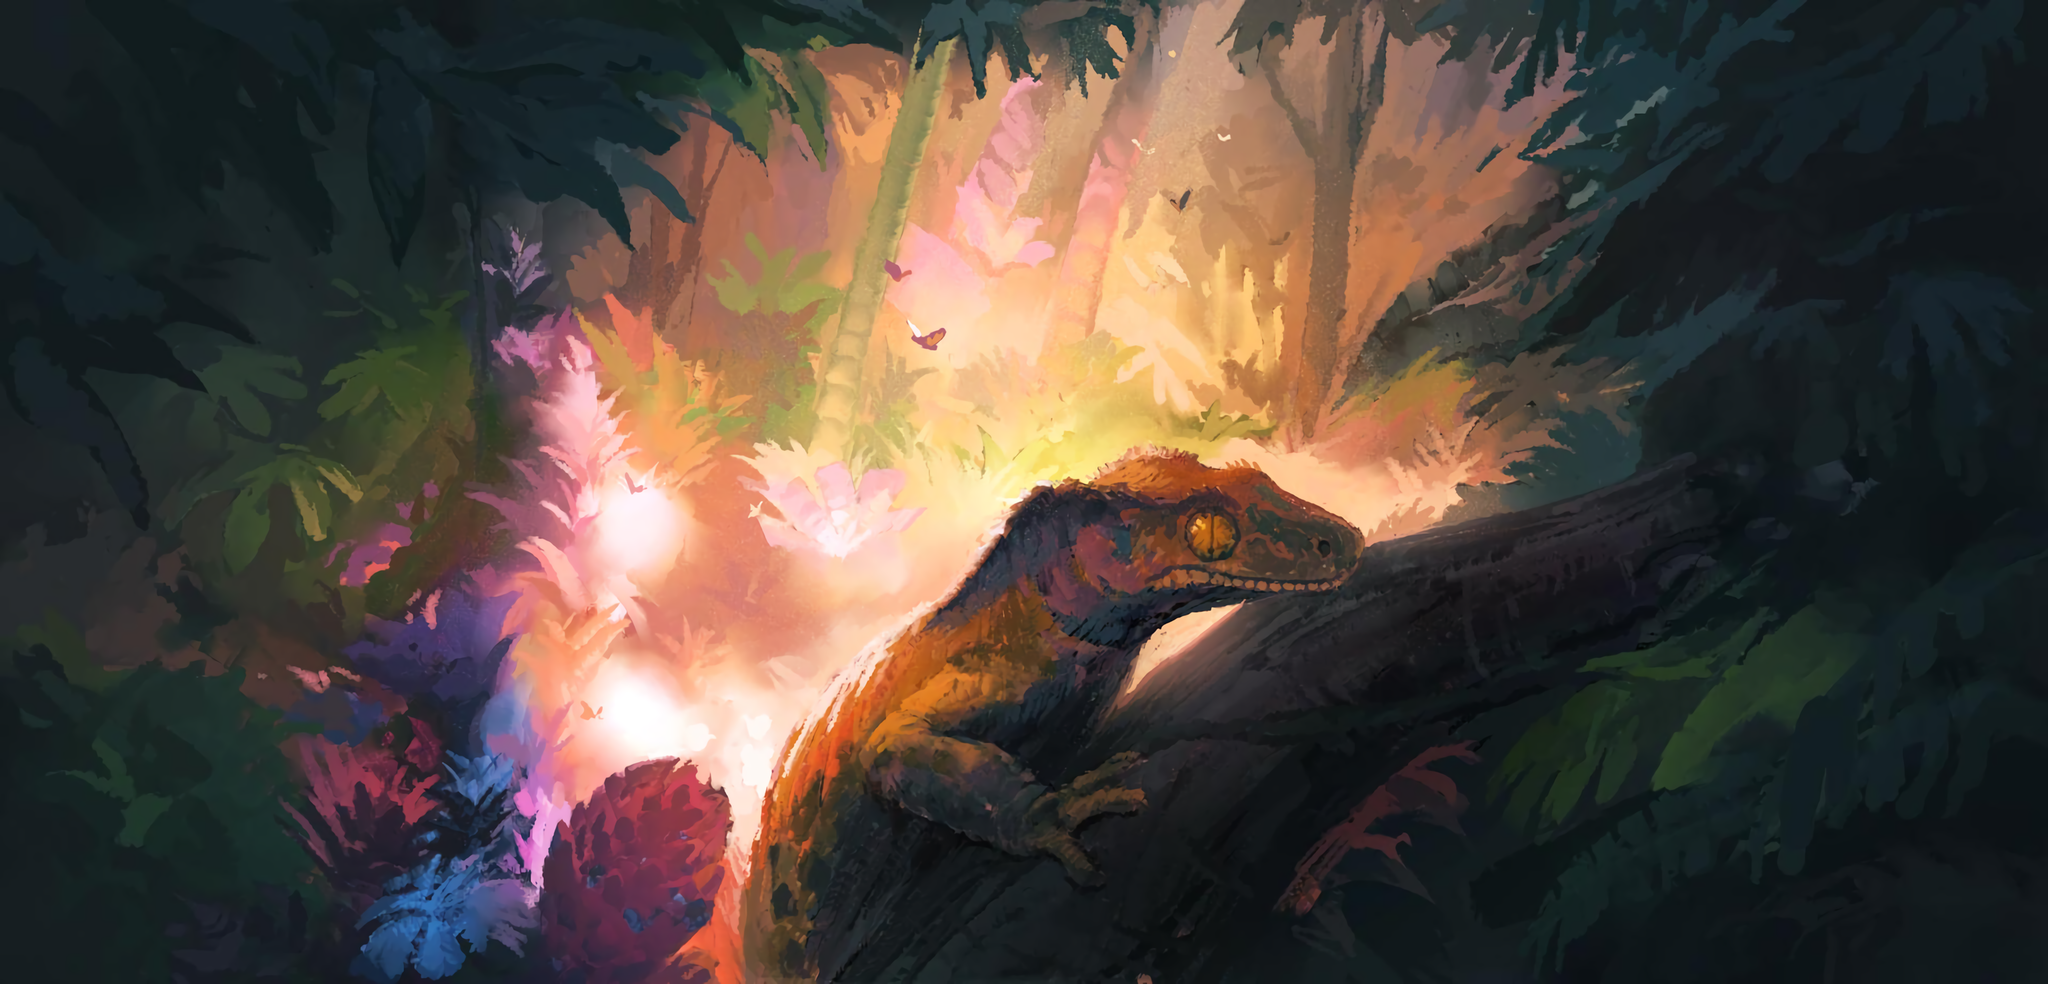 Jungle - Hunternif, Lizard, Jungle, Forest, Digital drawing, Art